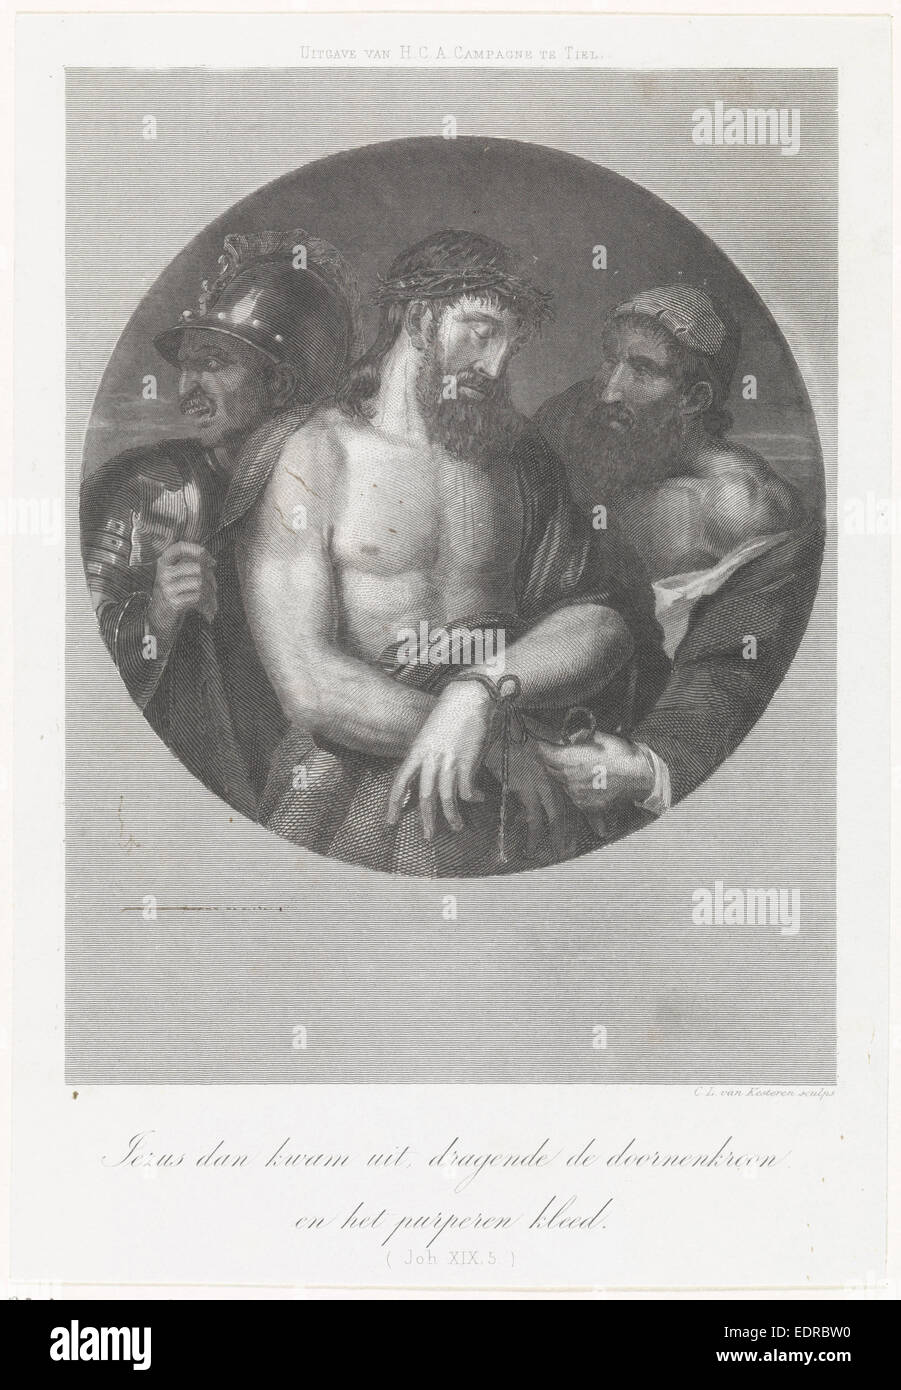 Ecce Homo, Christiaan Lodewijk van Kesteren, H.C.A. Campagne, 1842 - 1897 Stock Photo